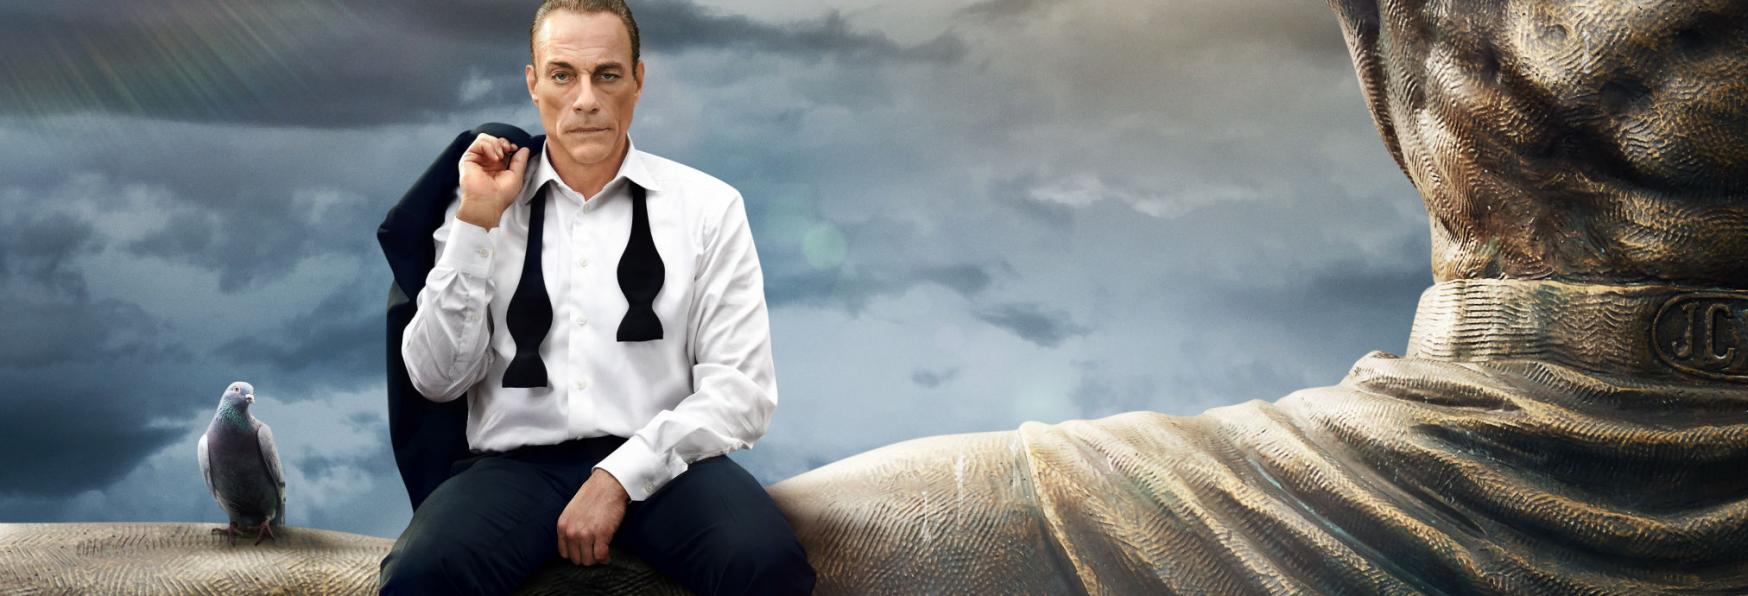 Jean-Claude Van Johnson: la Recensione de La Serie TV su Jean-Claude Van Damme